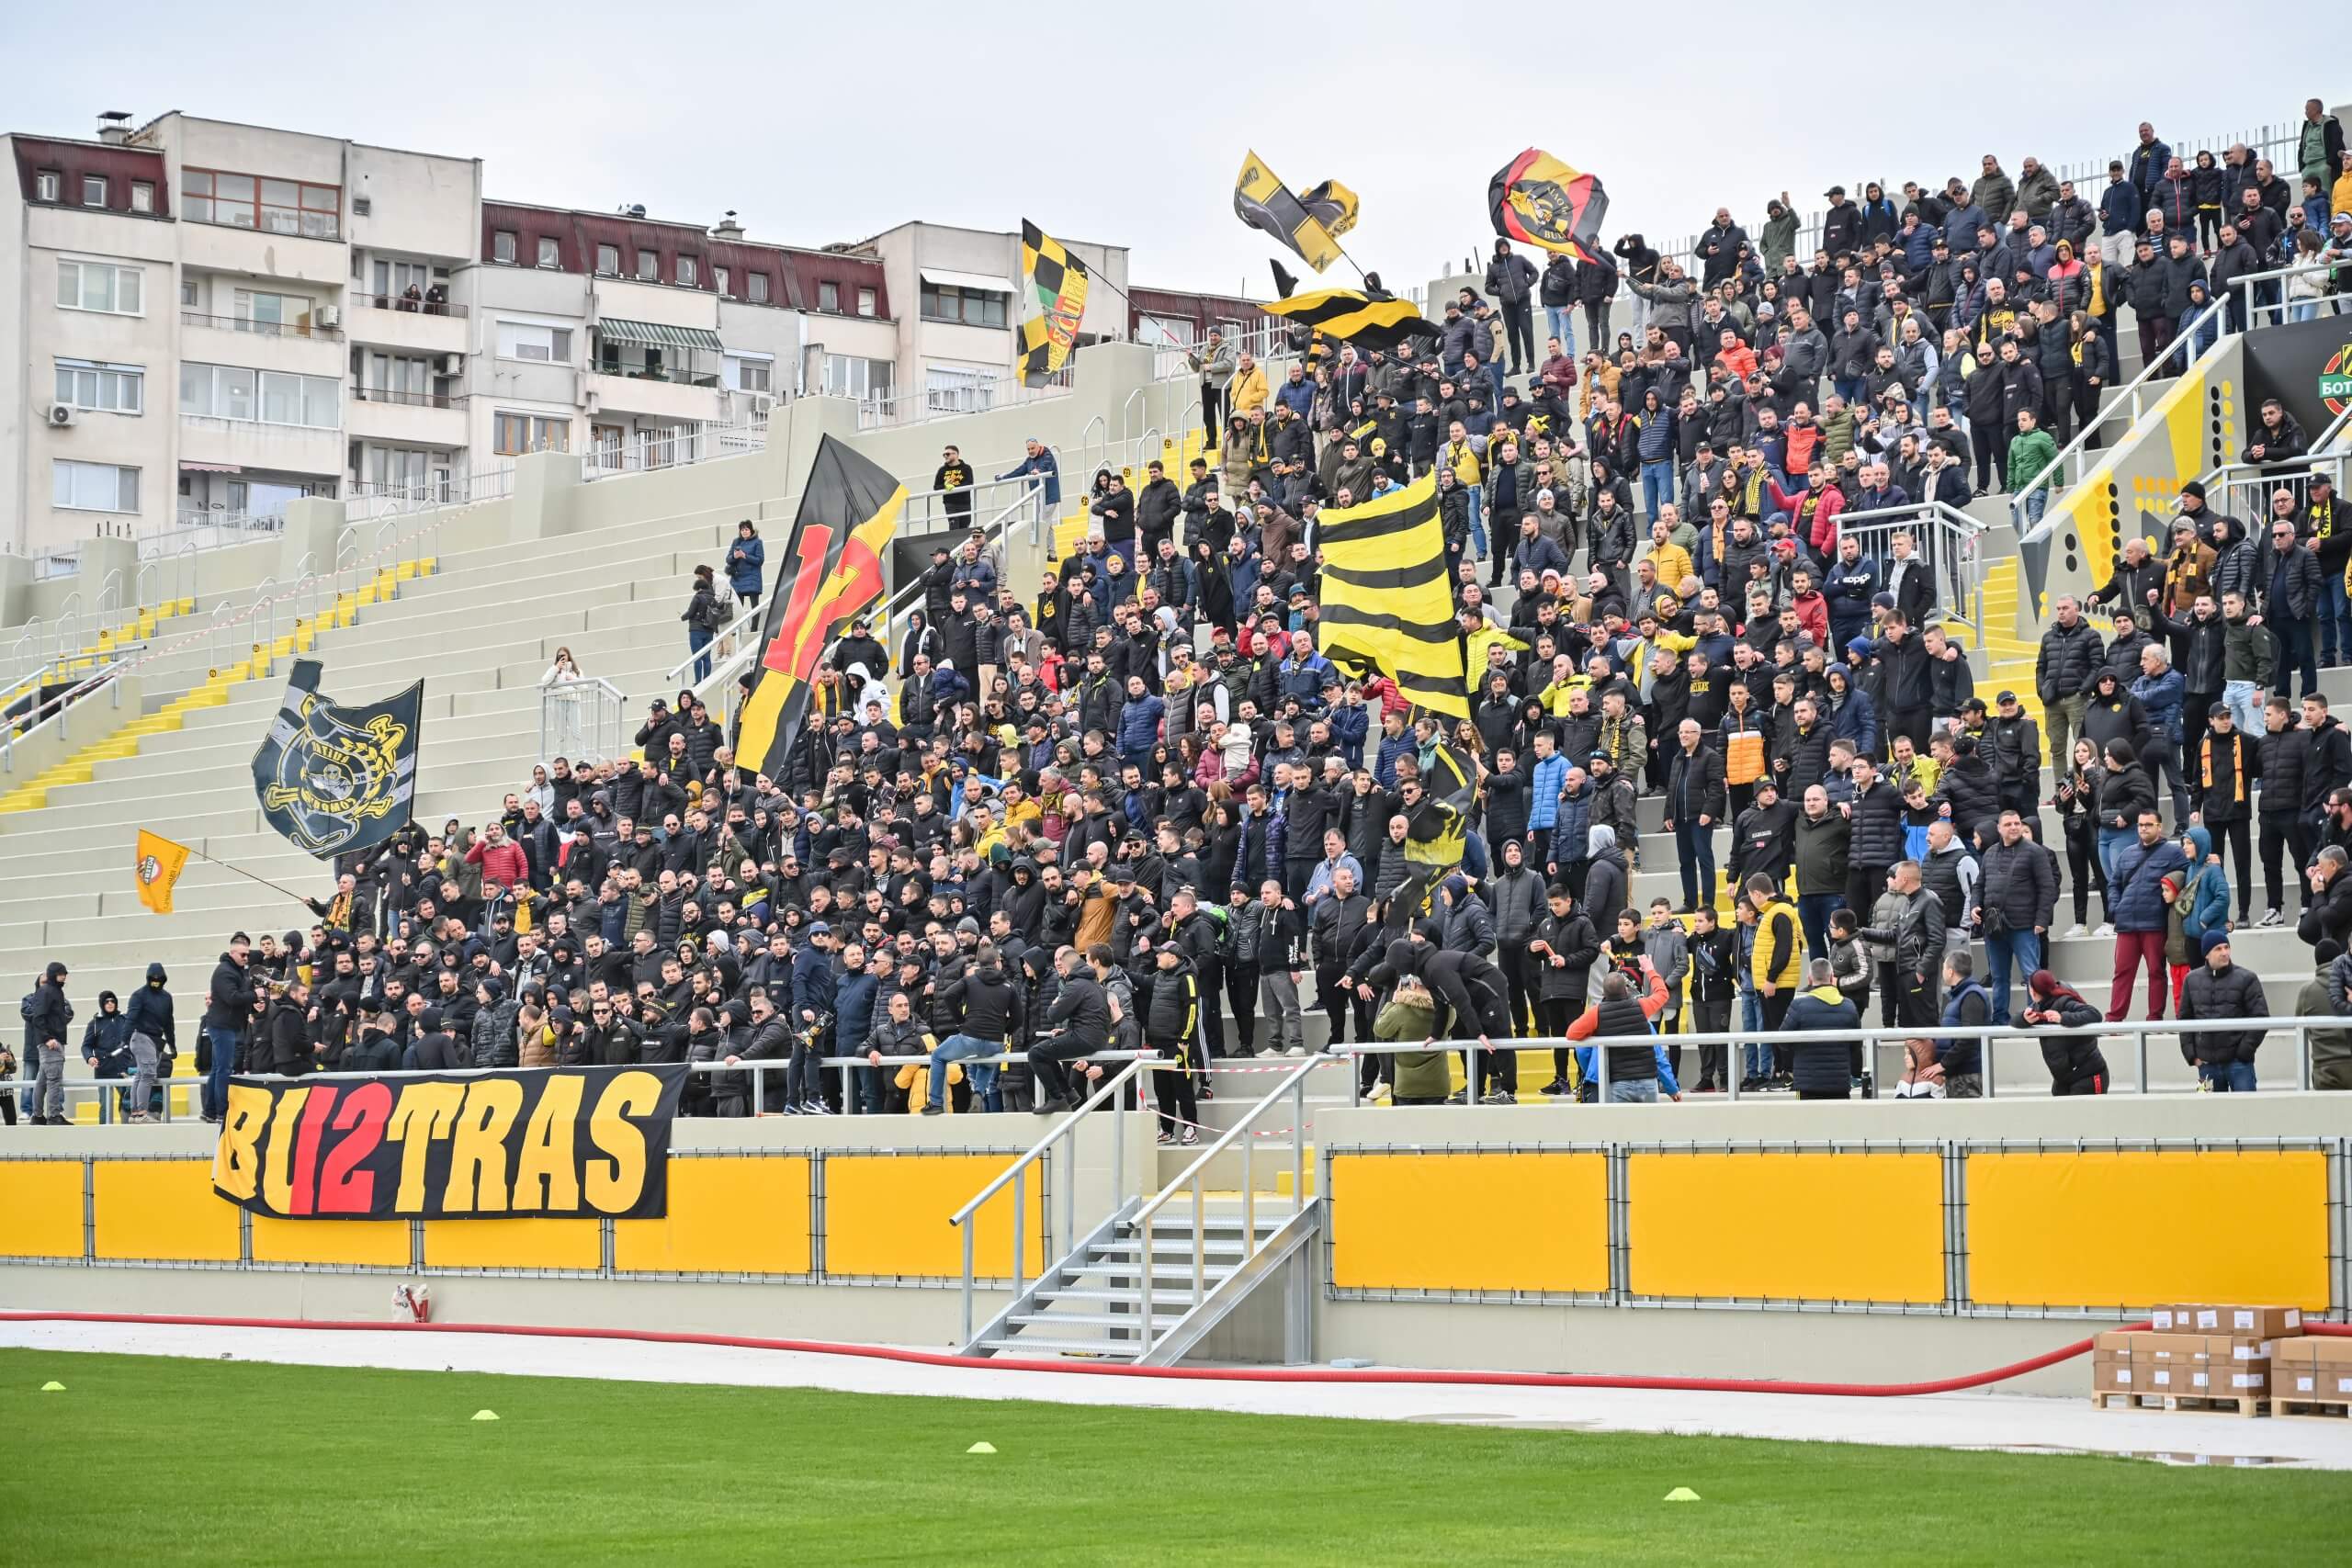 Stadion Hristo Botev baru di Plovdiv